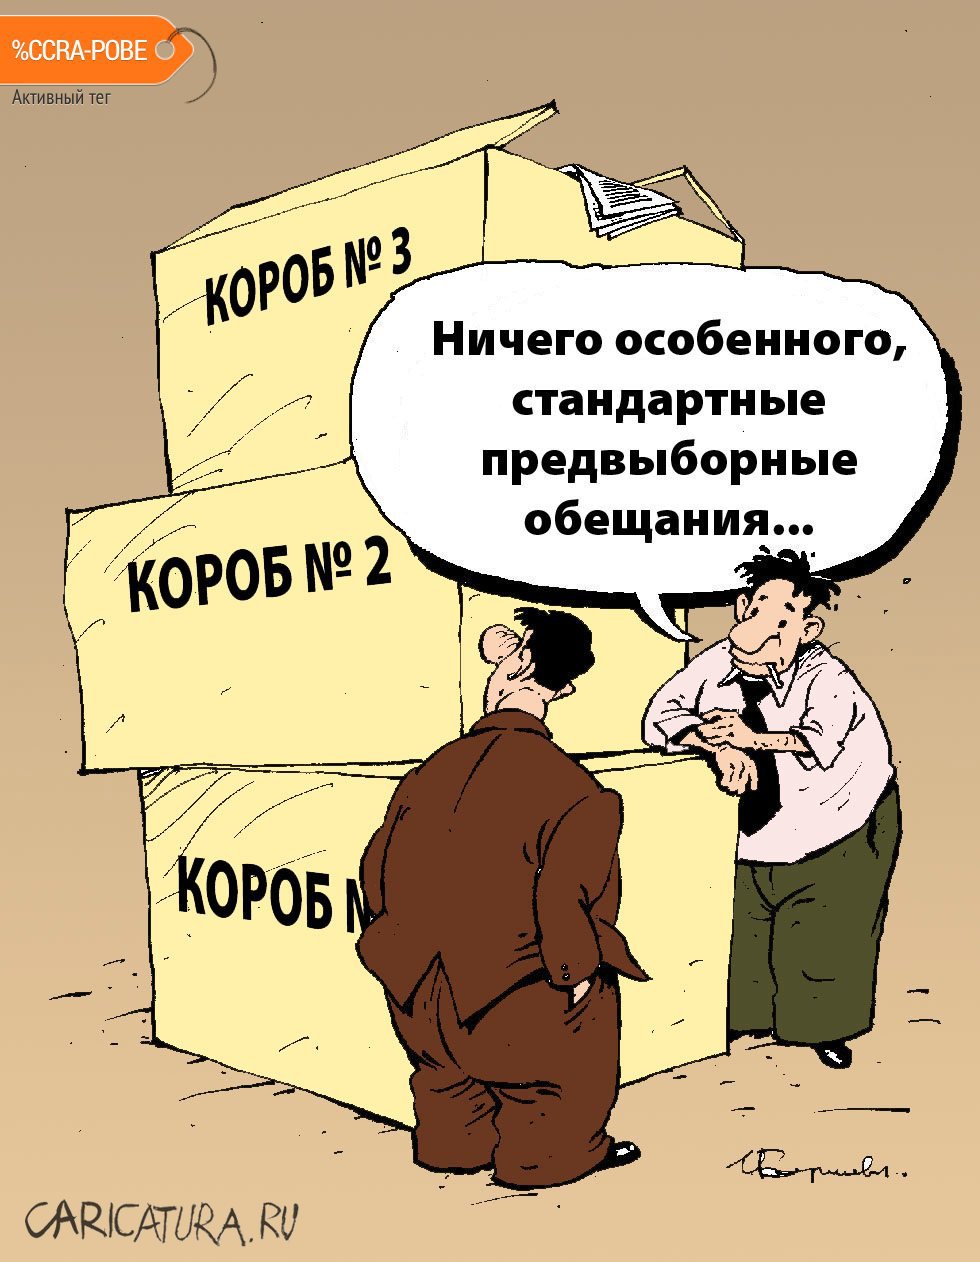 Карикатура "Выборы", Игорь Елистратов